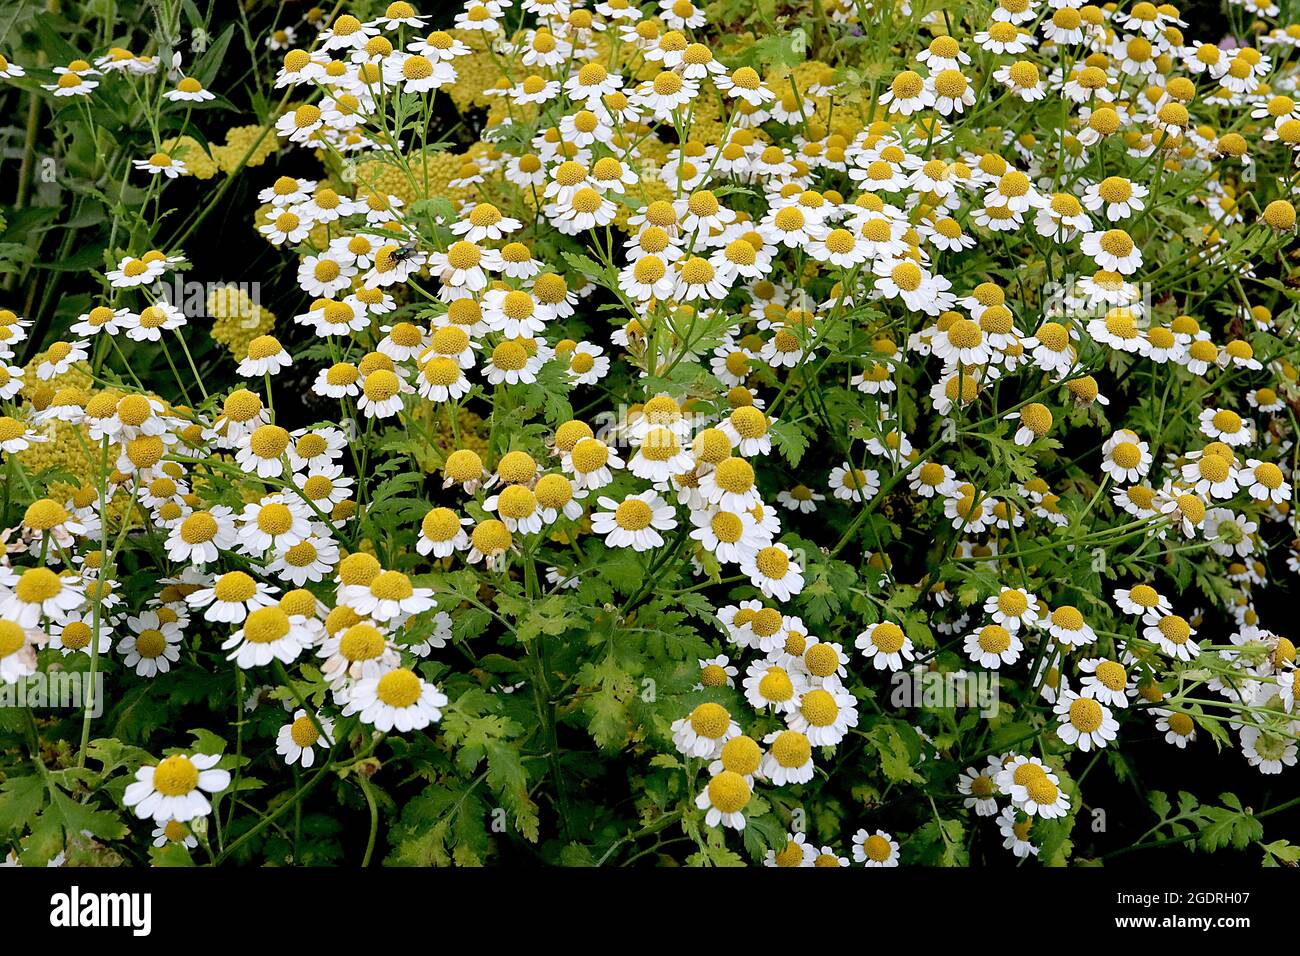 Tanaceum parthenium Feverhew – petites fleurs de type Marguerite avec des feuilles finement lobées sur de grandes tiges, juillet, Angleterre, Royaume-Uni Banque D'Images